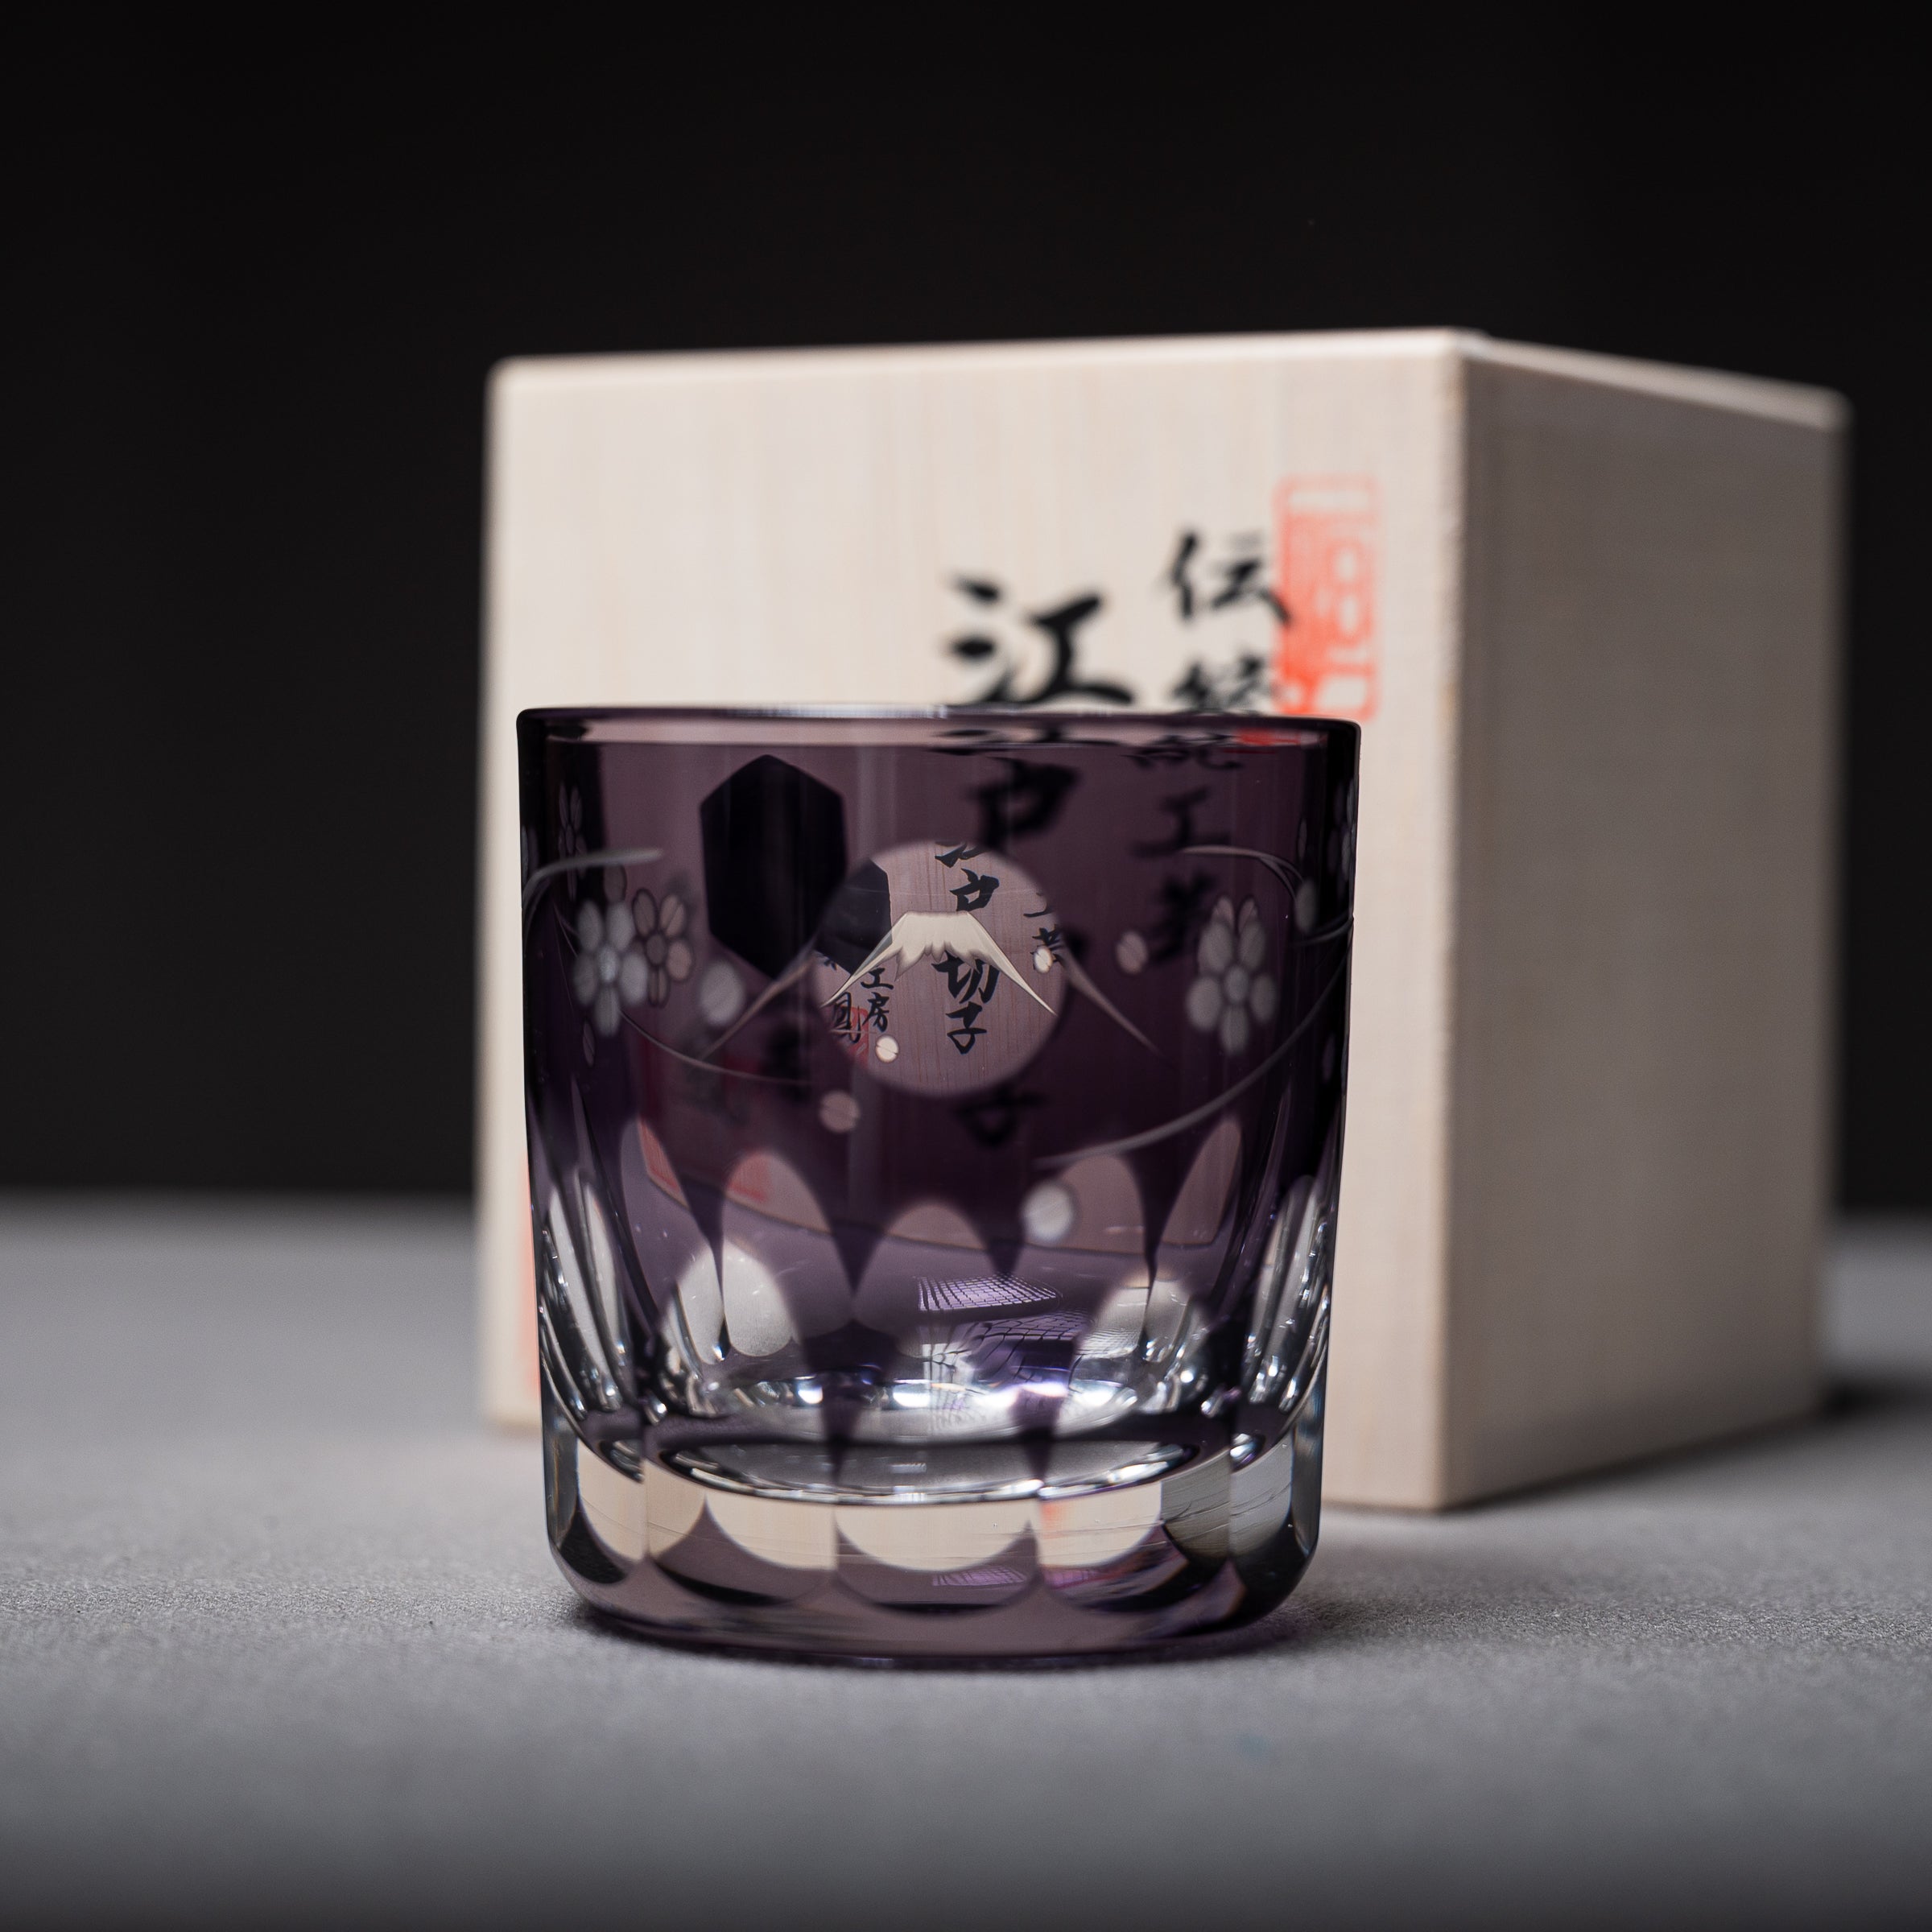 Premium Edo-Kiriko Single Sake Glass - Mt Fuji / 江戸切子 プレミアム酒カップ 梅富士